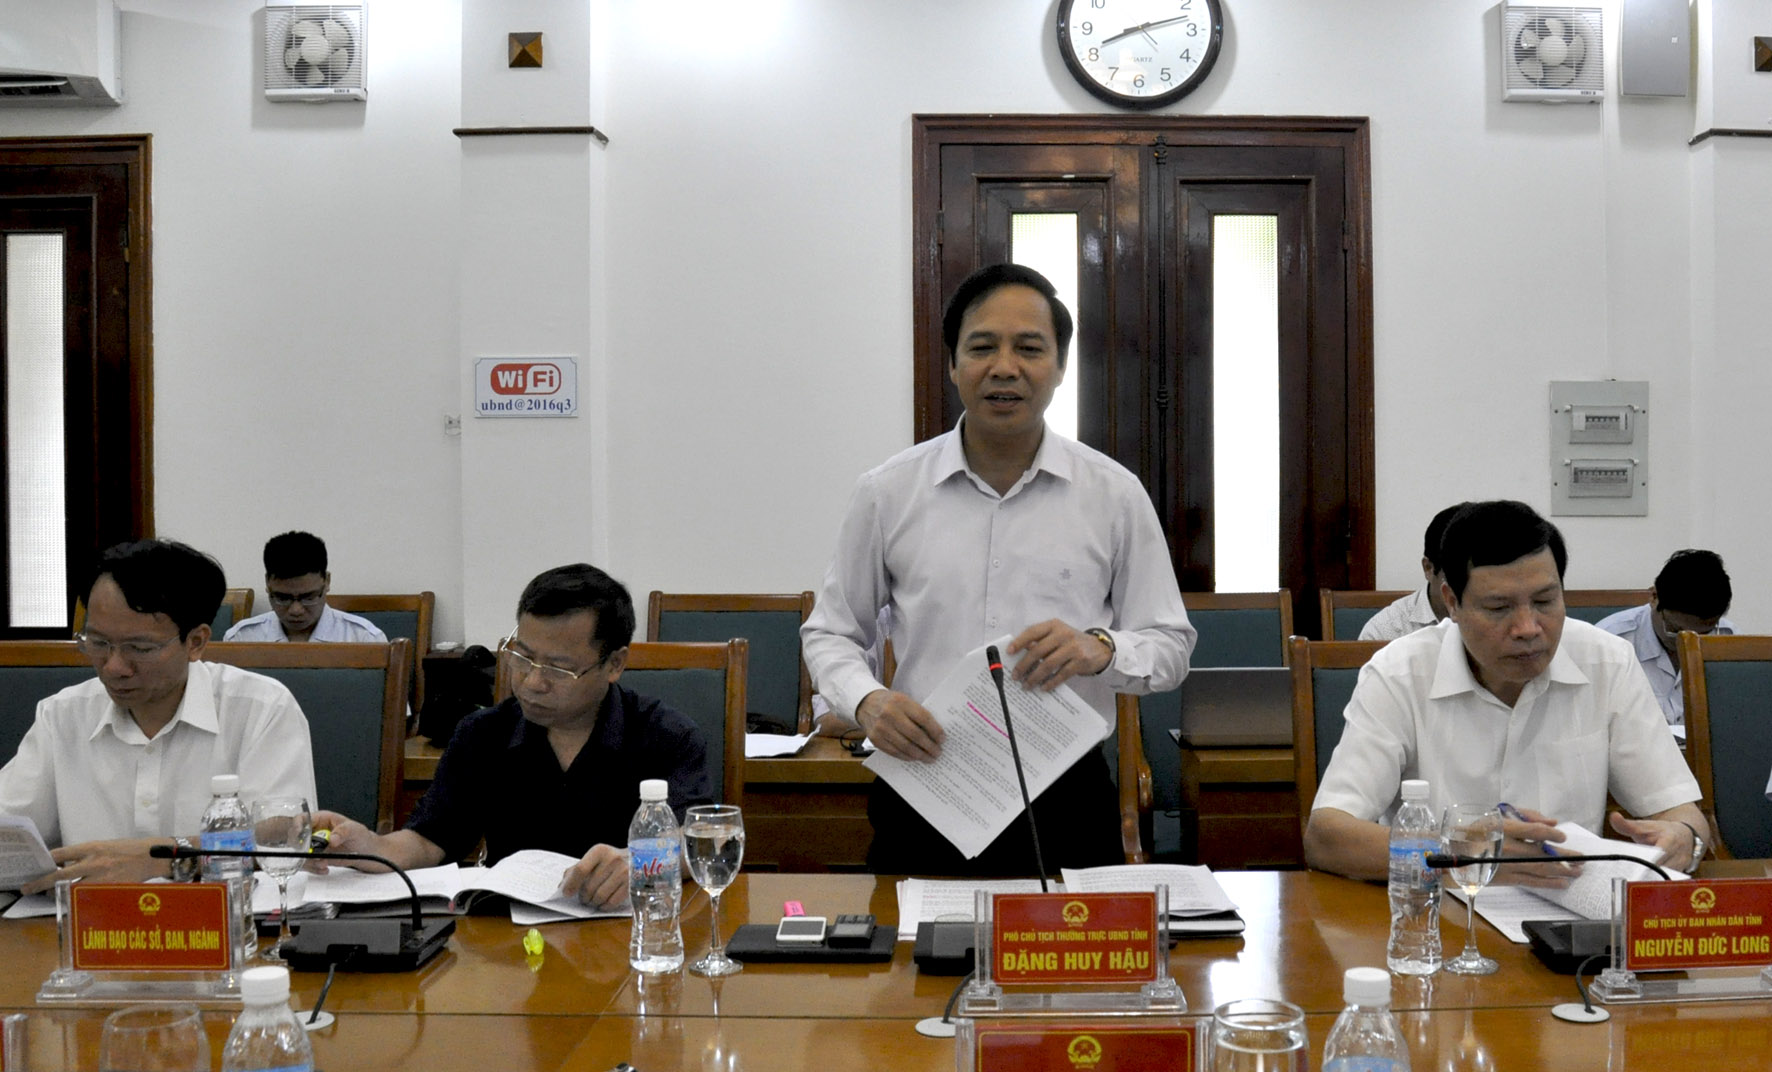 Đồng chí Đặng Huy Hậu, Phó Chủ tịch Thường trực UBND tỉnh báo cáo tình hình tiếp công dân, giải quyết KNTC của tỉnh